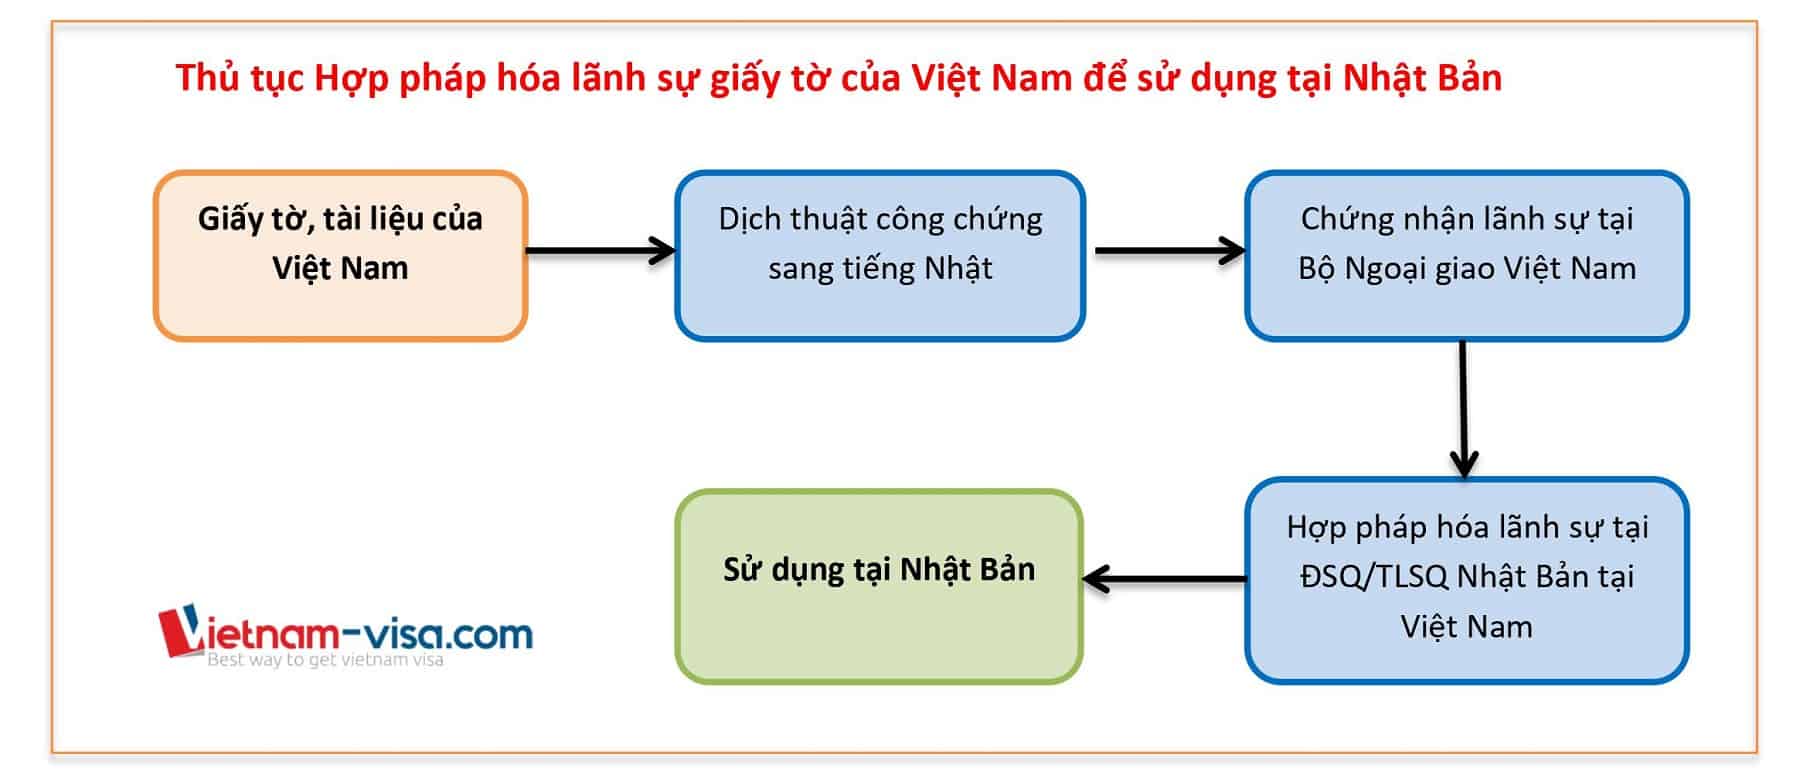 Thủ tục Hợp pháp hóa lãnh sự giấy tờ Việt Nam để sử dụng tại Nhật Bản